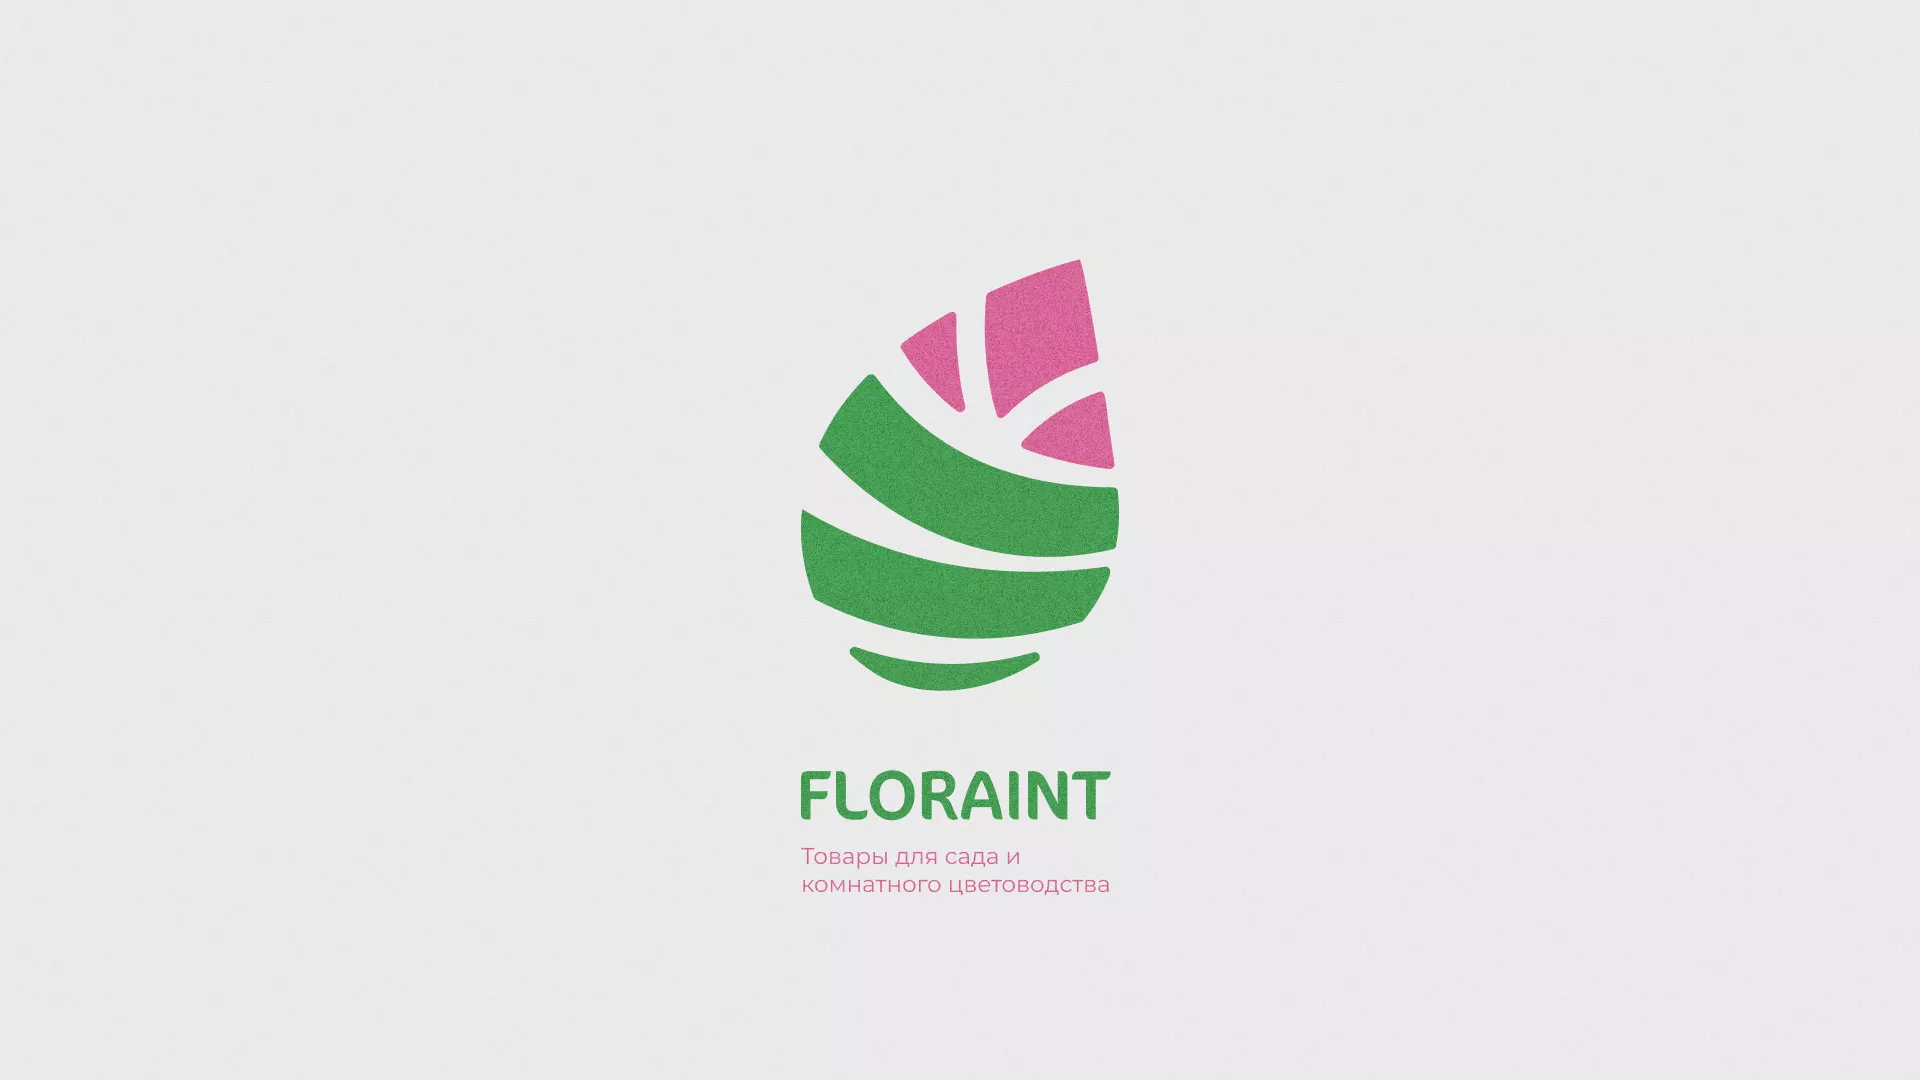 Разработка оформления профиля Instagram для магазина «Floraint» в Таре